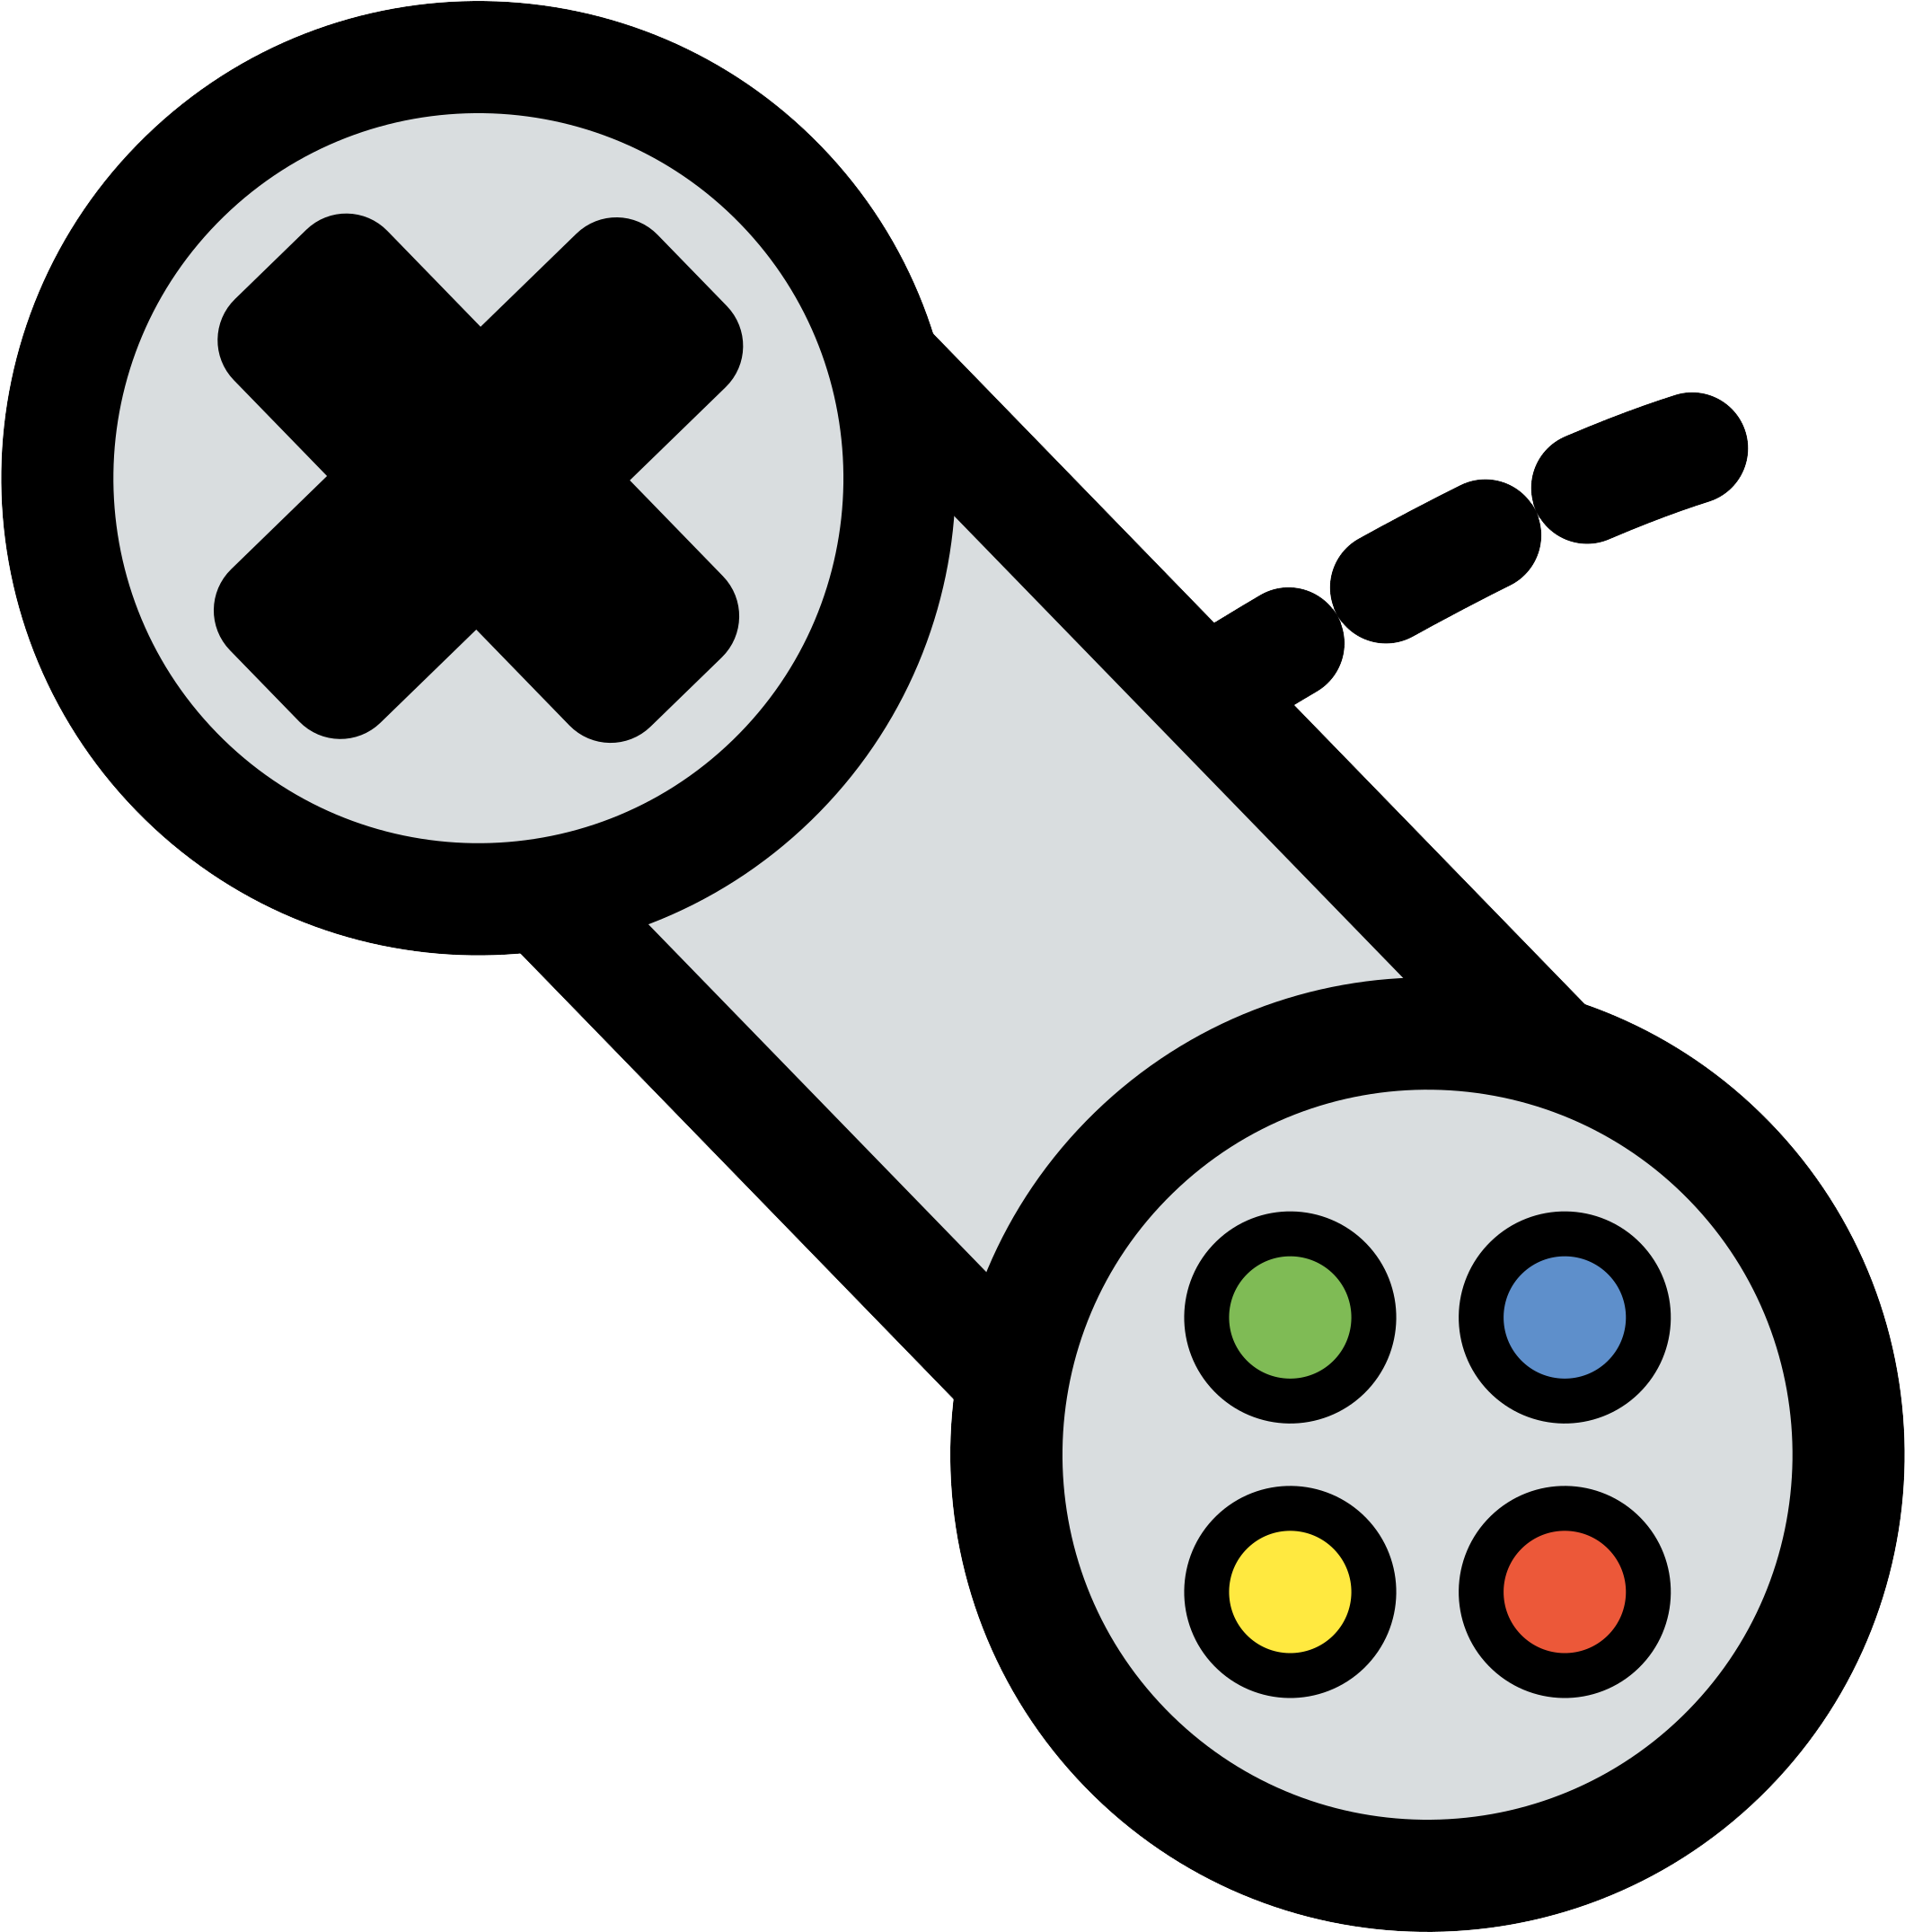 Xbox 360 Controller Game Controller Video Game Clip - Xbox 360 Controller Game Controller Video Game Clip (2400x2400)